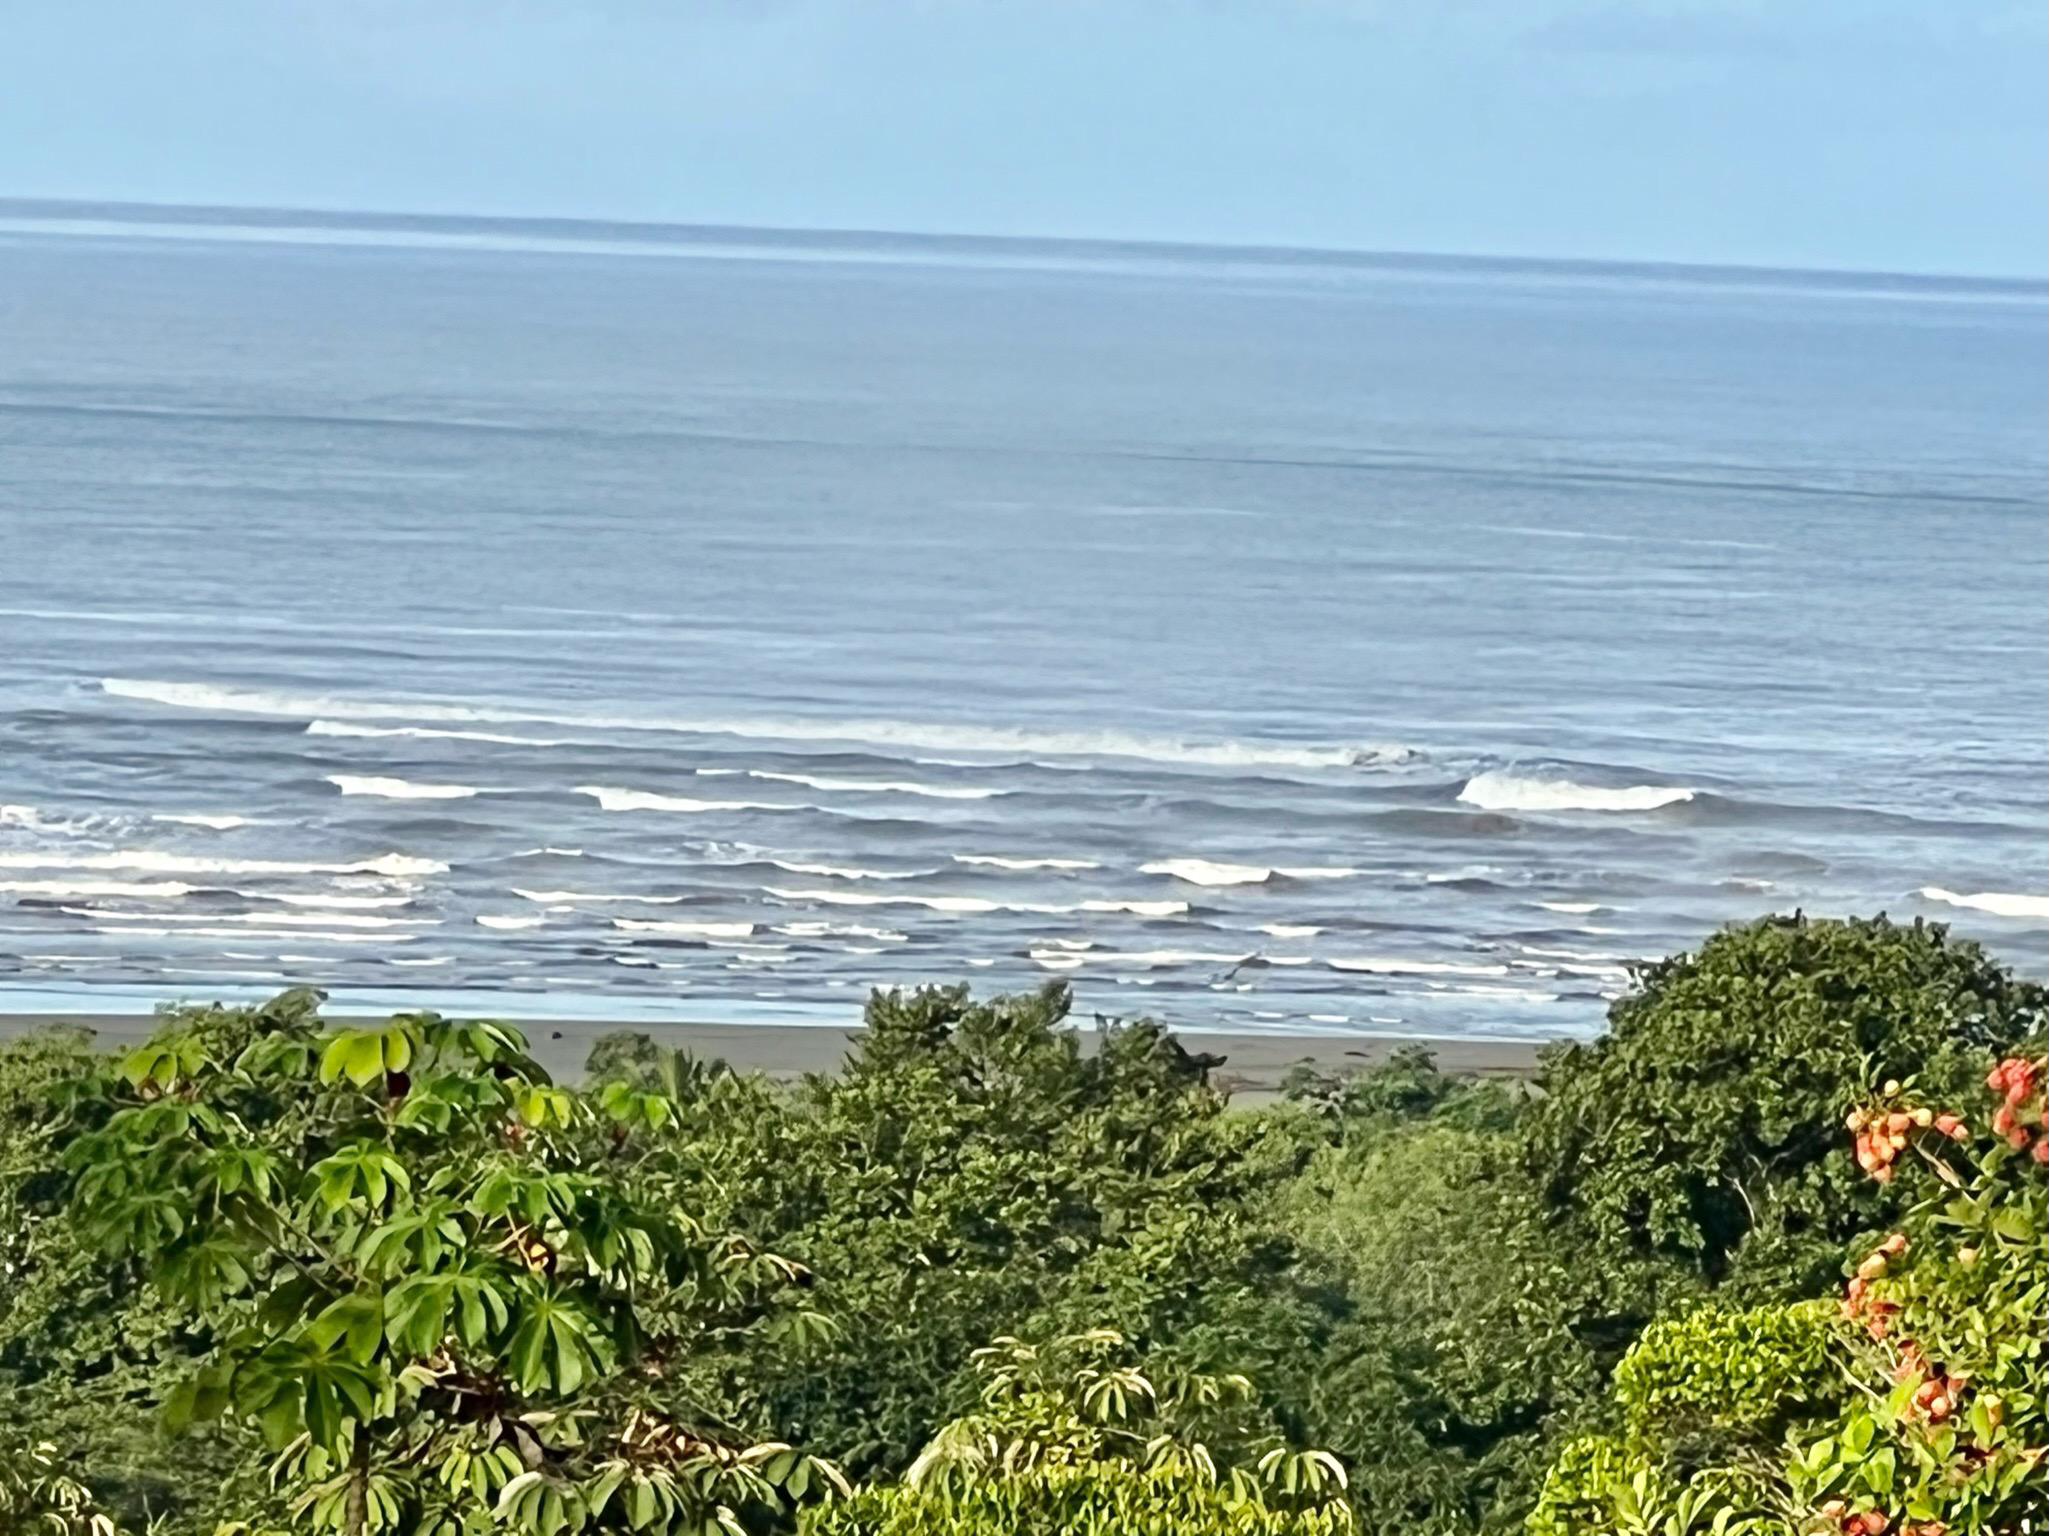 The Beauty of Luxury Hotel Ocean Breeze in Costa Rica